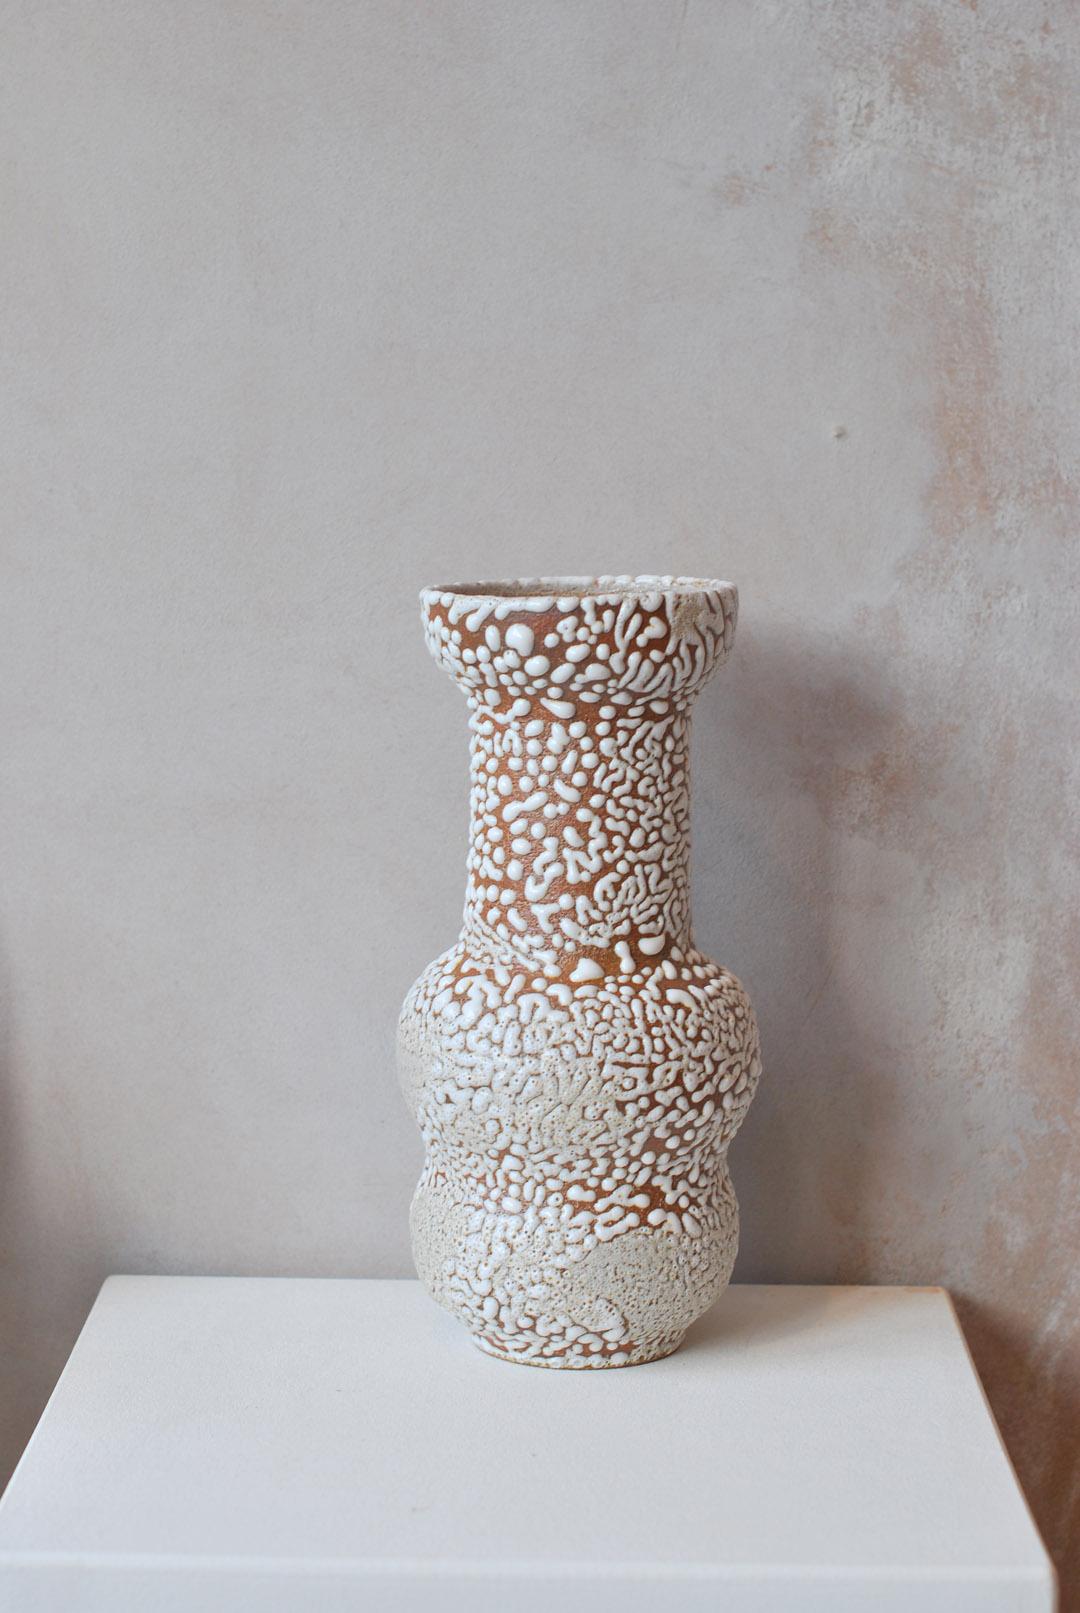 C-018 Vase aus weißem Steingut von Moïo Studio
Abmessungen: T12 x B12 x H25 cm
MATERIALIEN: Weiße Kriechglasur auf hellbraunem Steingut
Von Hand auf dem Rad gefertigt
Einzigartiges Stück, fragen Sie nach Mehrlingen

ist das in Berlin ansässige